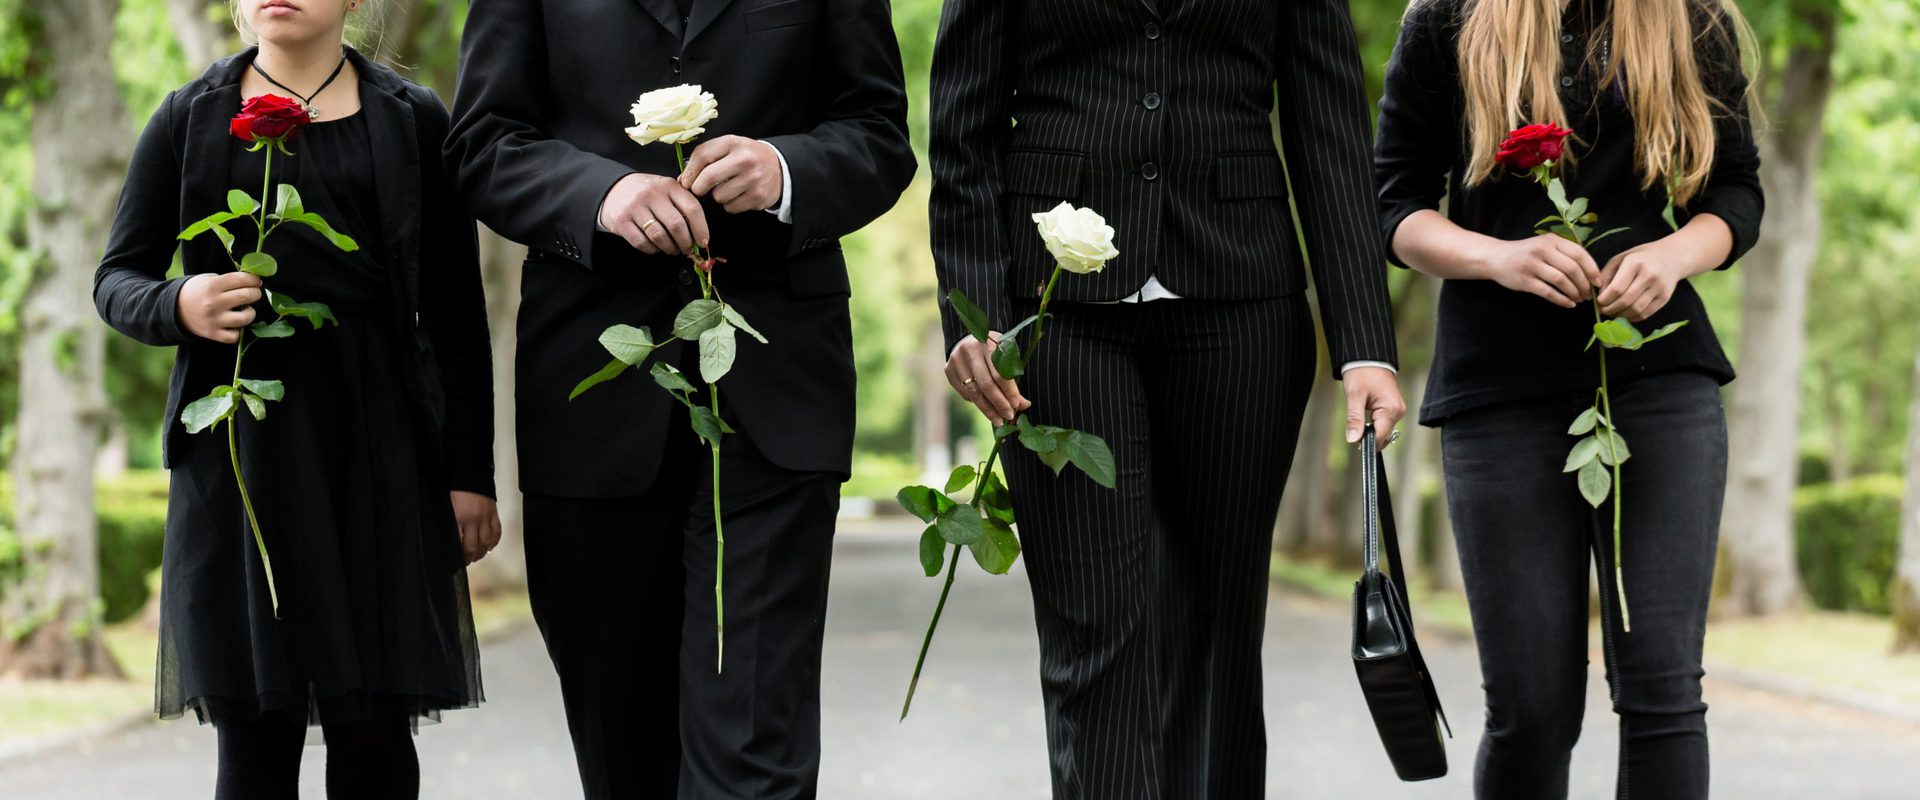 Vainajan pukeminen ja hautajaisiin pukeutuminen